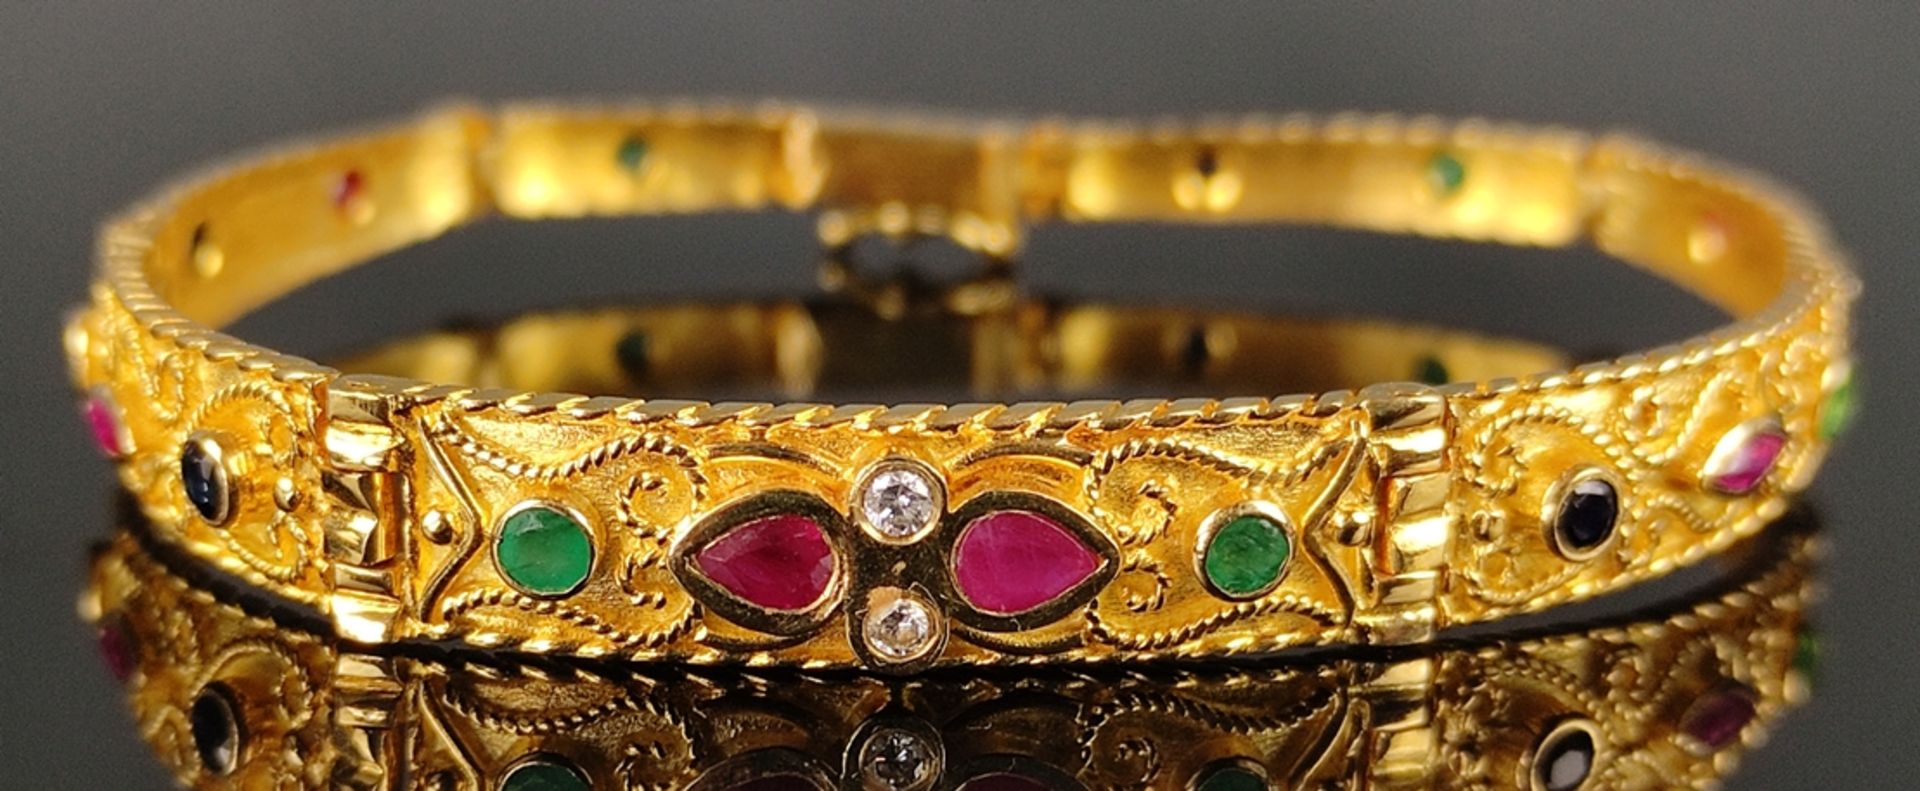 Exklusives Armband mit Saphiren, Rubinen, Smaragden und zwei Brillanten, bestehend aus 7 Gliedern,  - Bild 2 aus 3